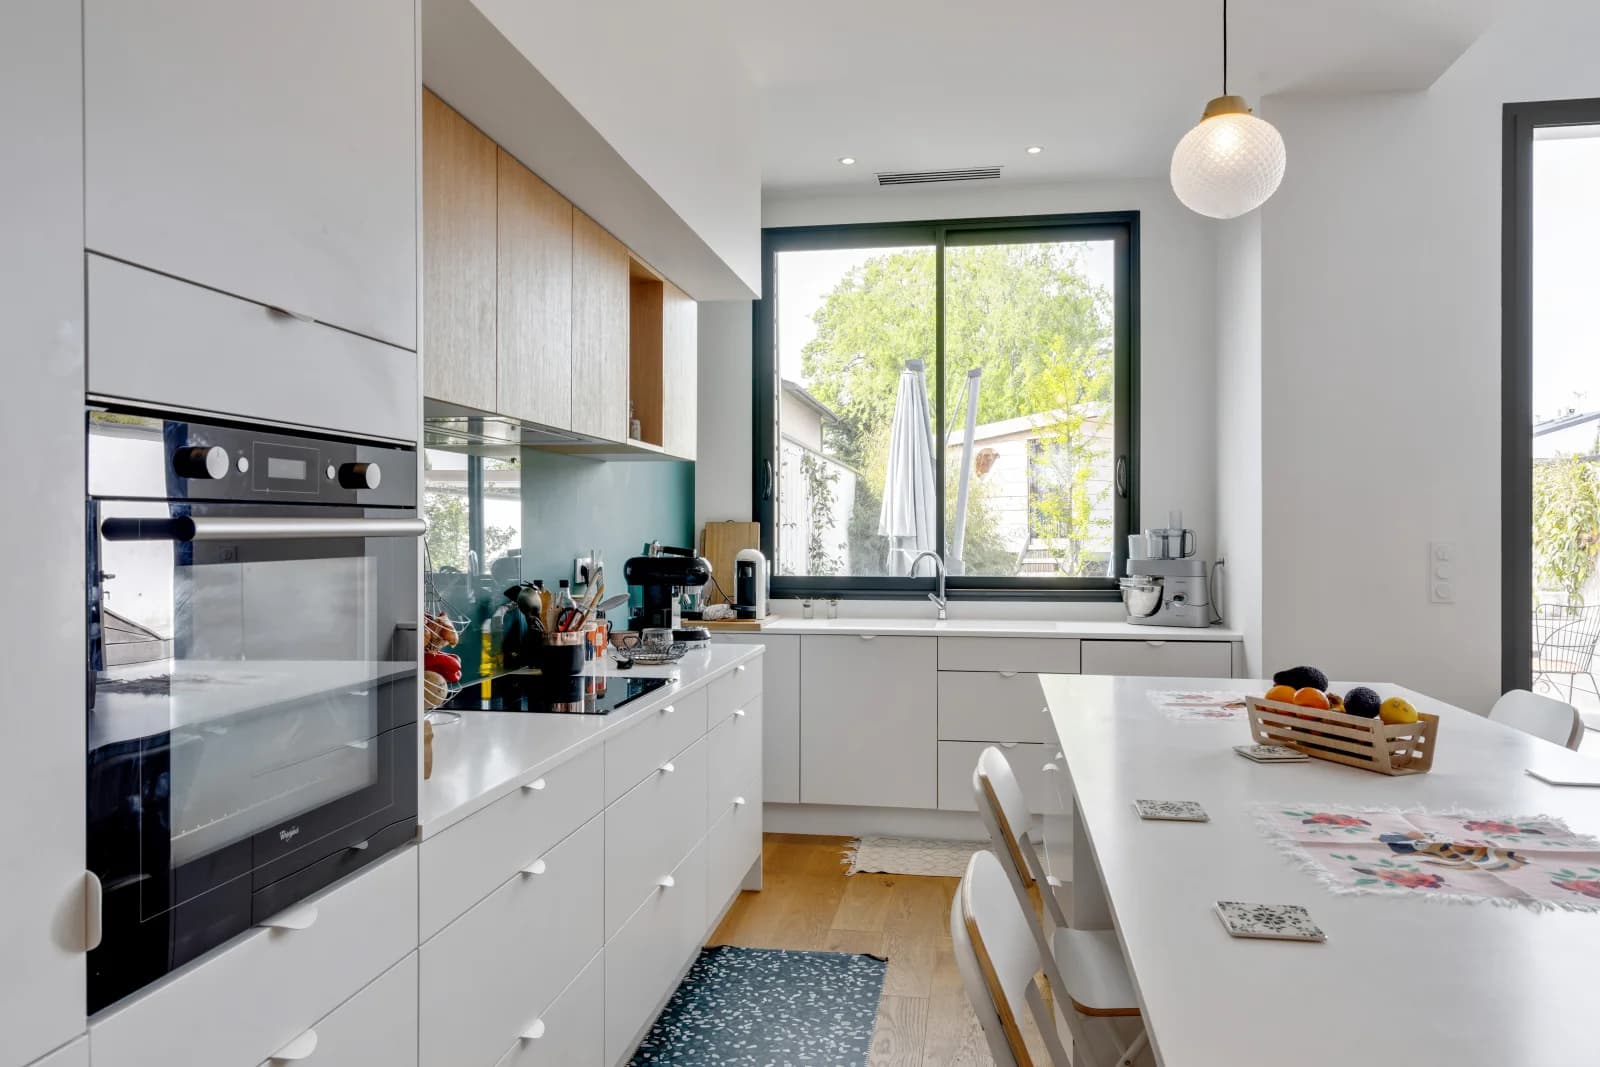 Kitchen dentro Casa de cristal diseñada por un arquitecto con terraza y jardín - 5